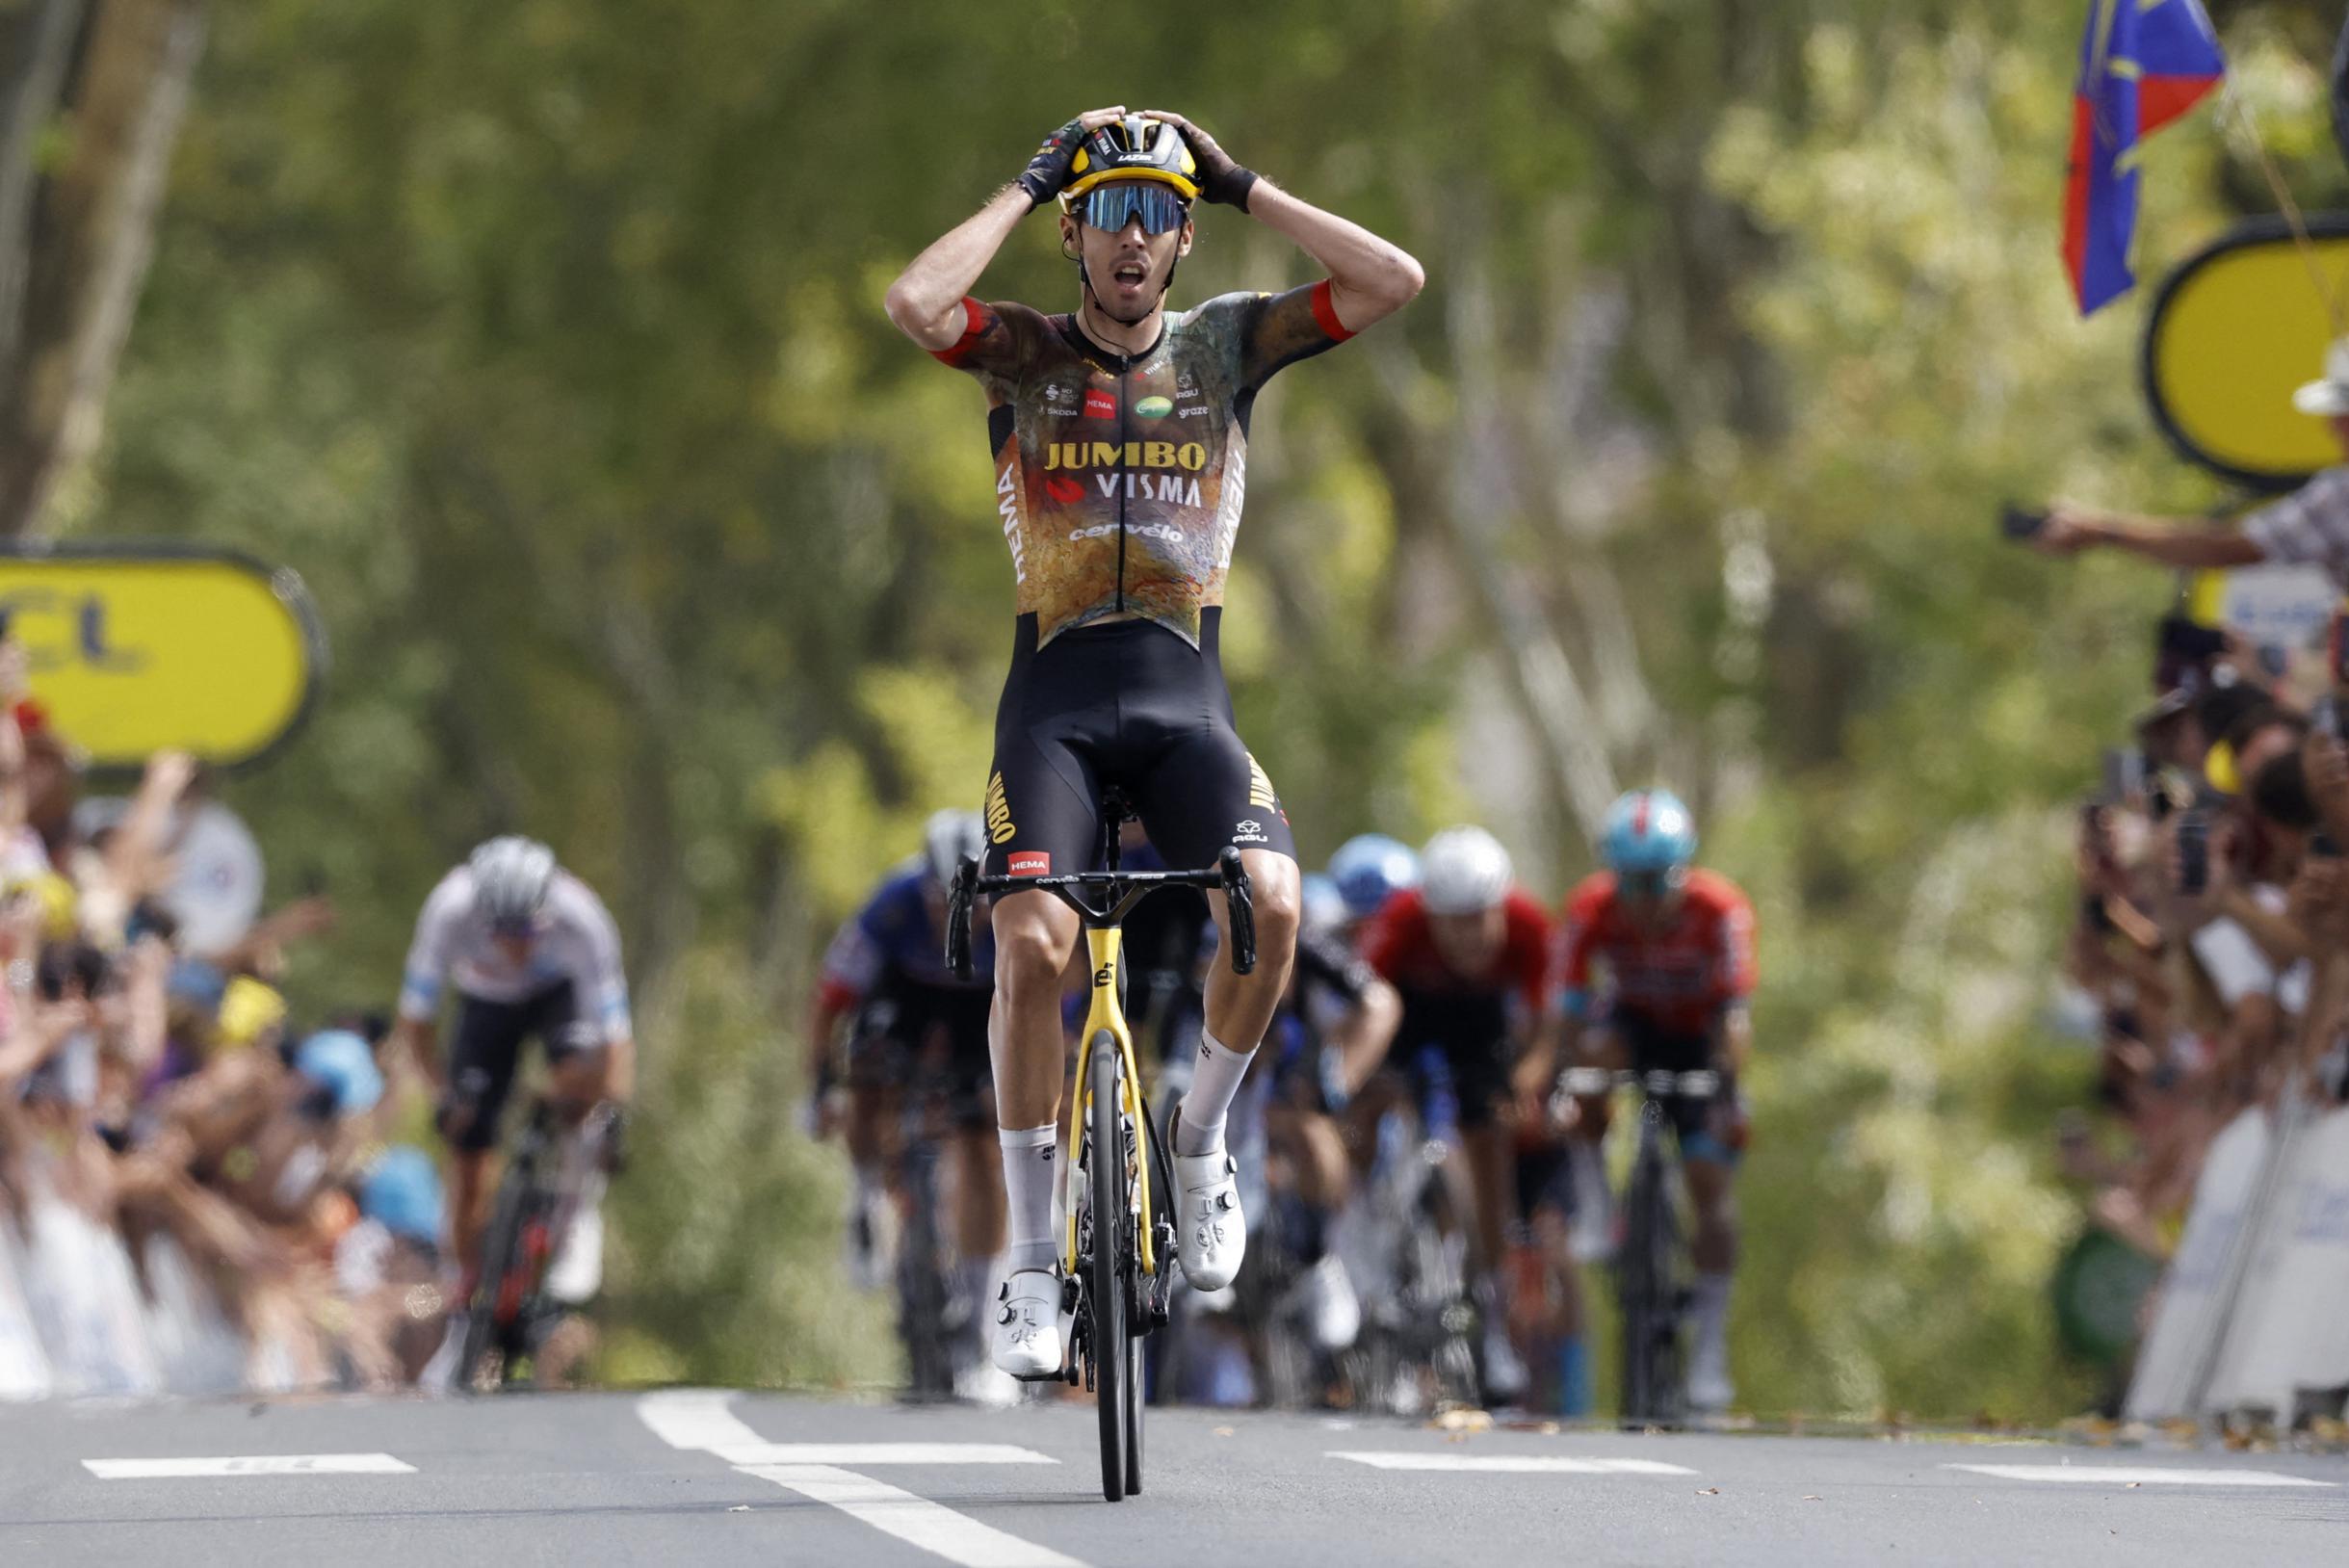 Risultati del Tour de France in macchina 19. La tappa di salto si conclude con una vittoria per una nuova tappa per Jumbo-Visma, Christophe Laporte sorprende Peloton